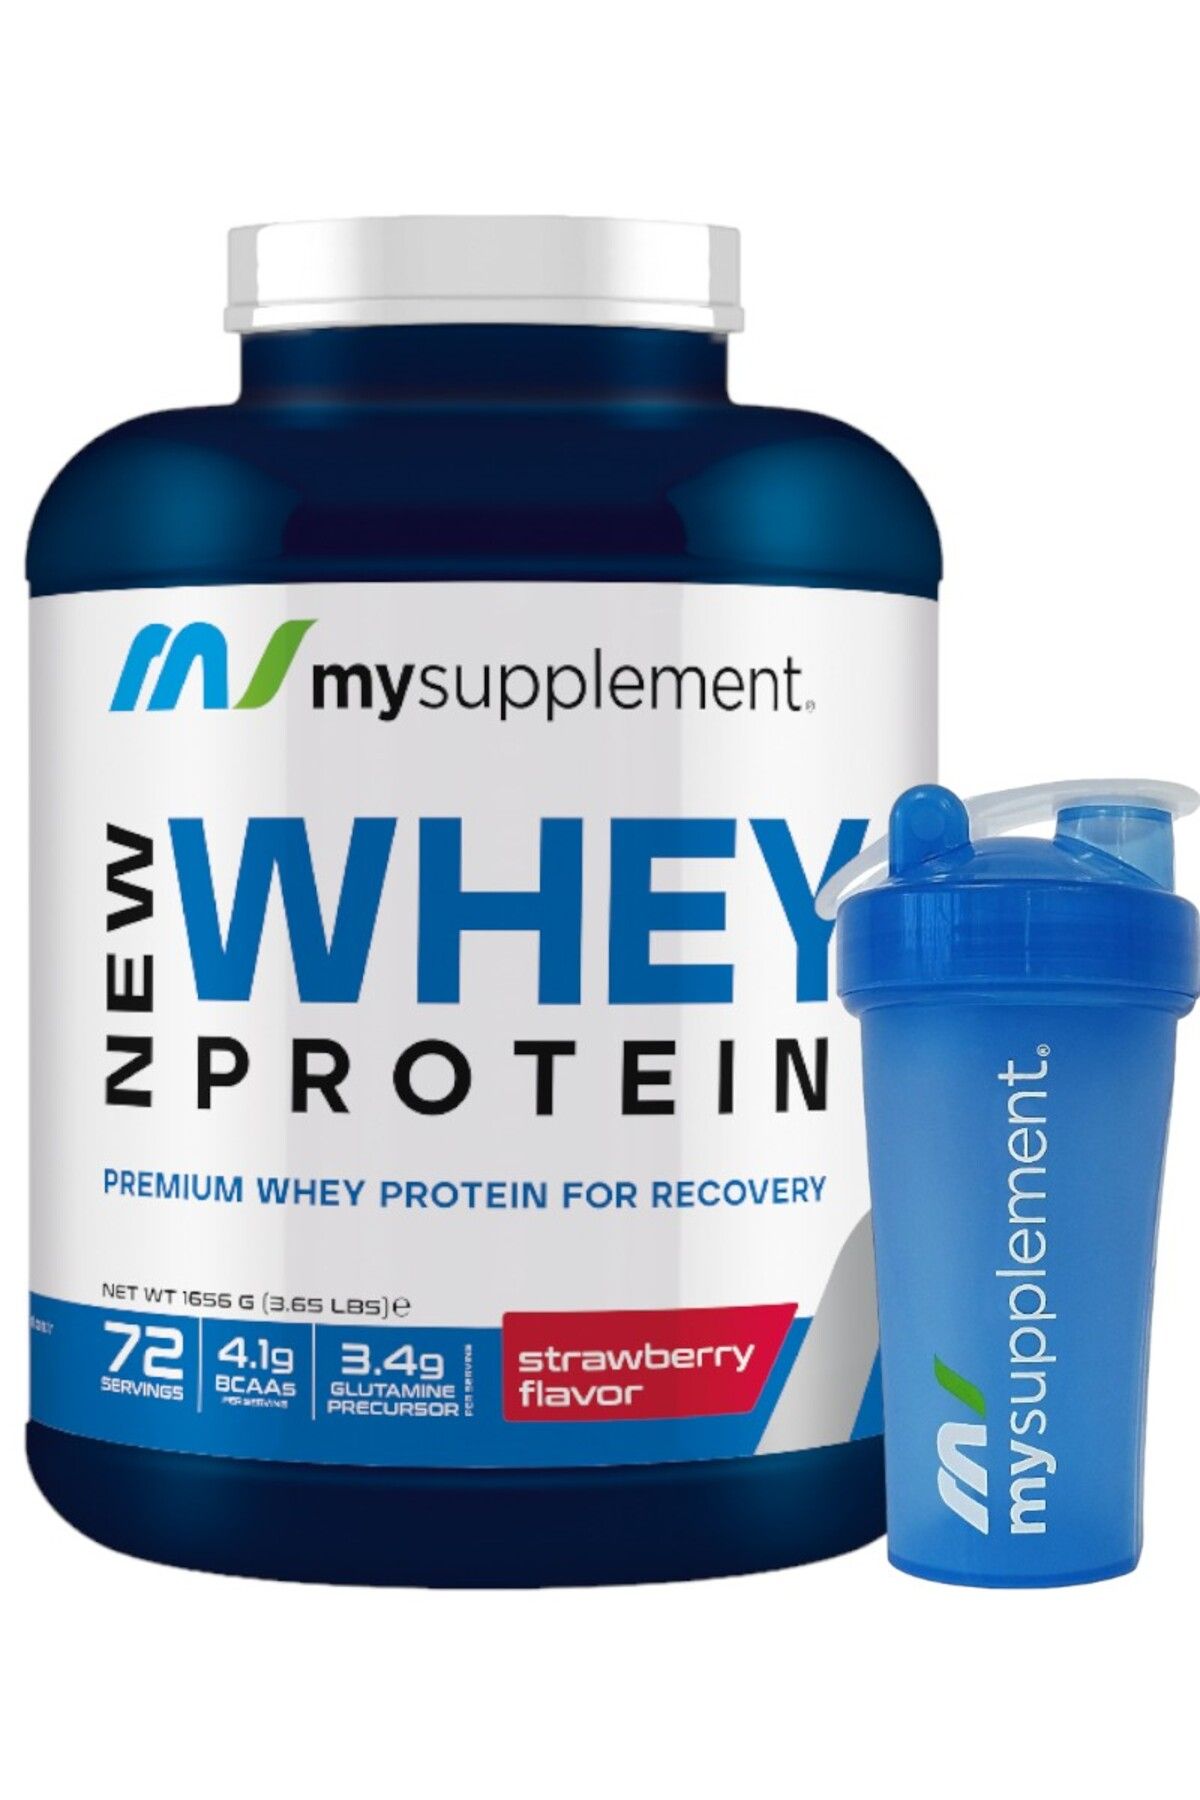 Mysupplement New Whey Protein Çilek 72 Servis 1656gr Protein Tozu %78 Protein